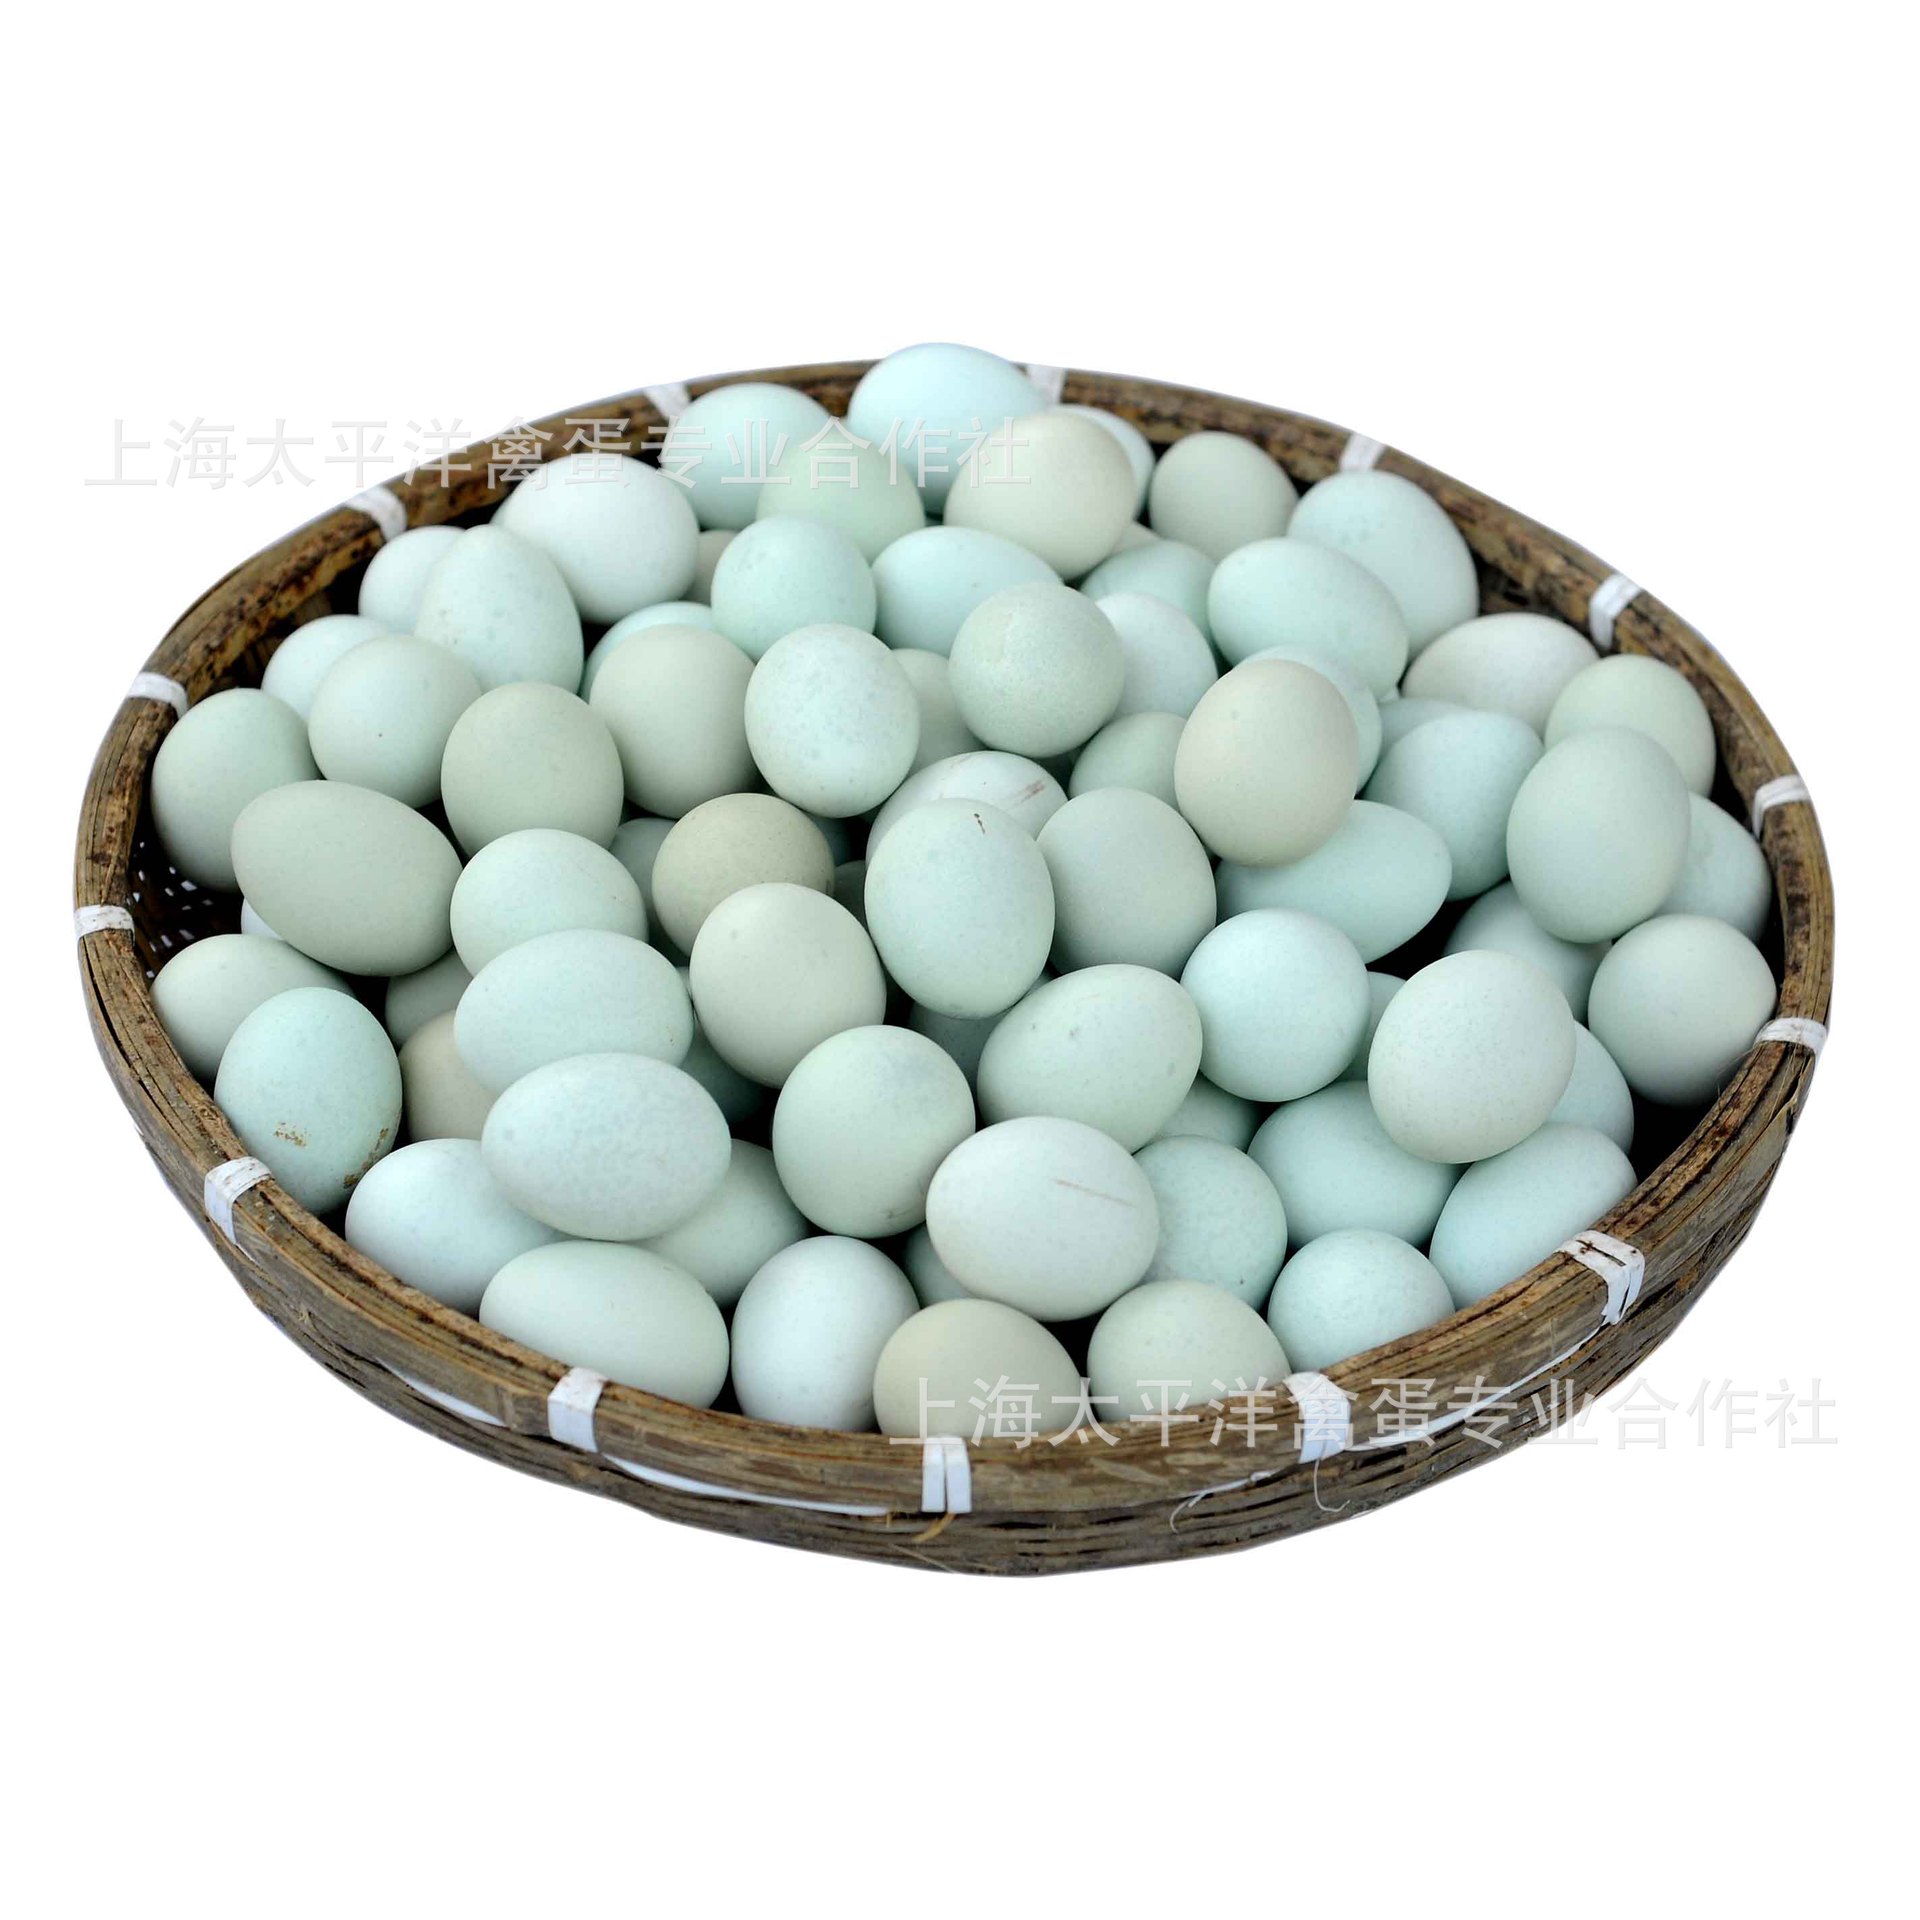 优质土鸡蛋 宝宝鸡蛋 20枚/盒 上海本土安全新鲜 特价批发 太平洋绿壳